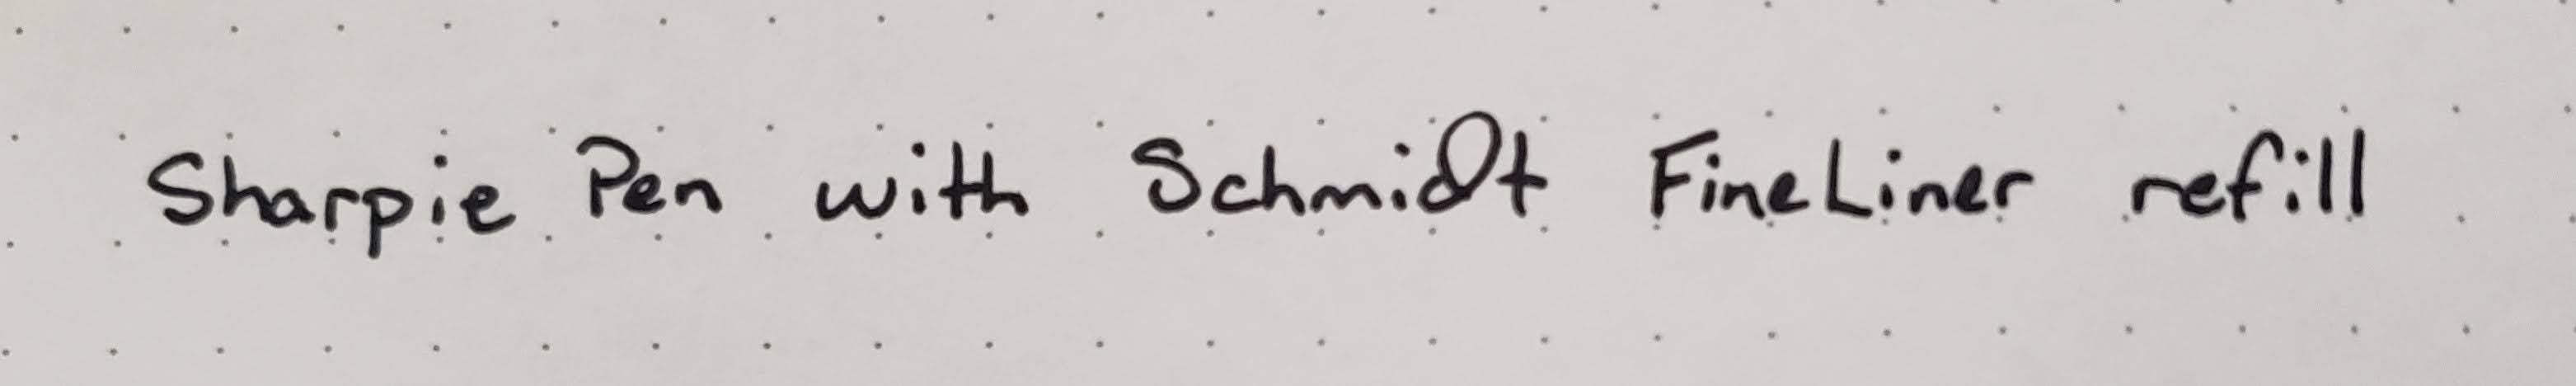 Schmidt 6040 Fineliner